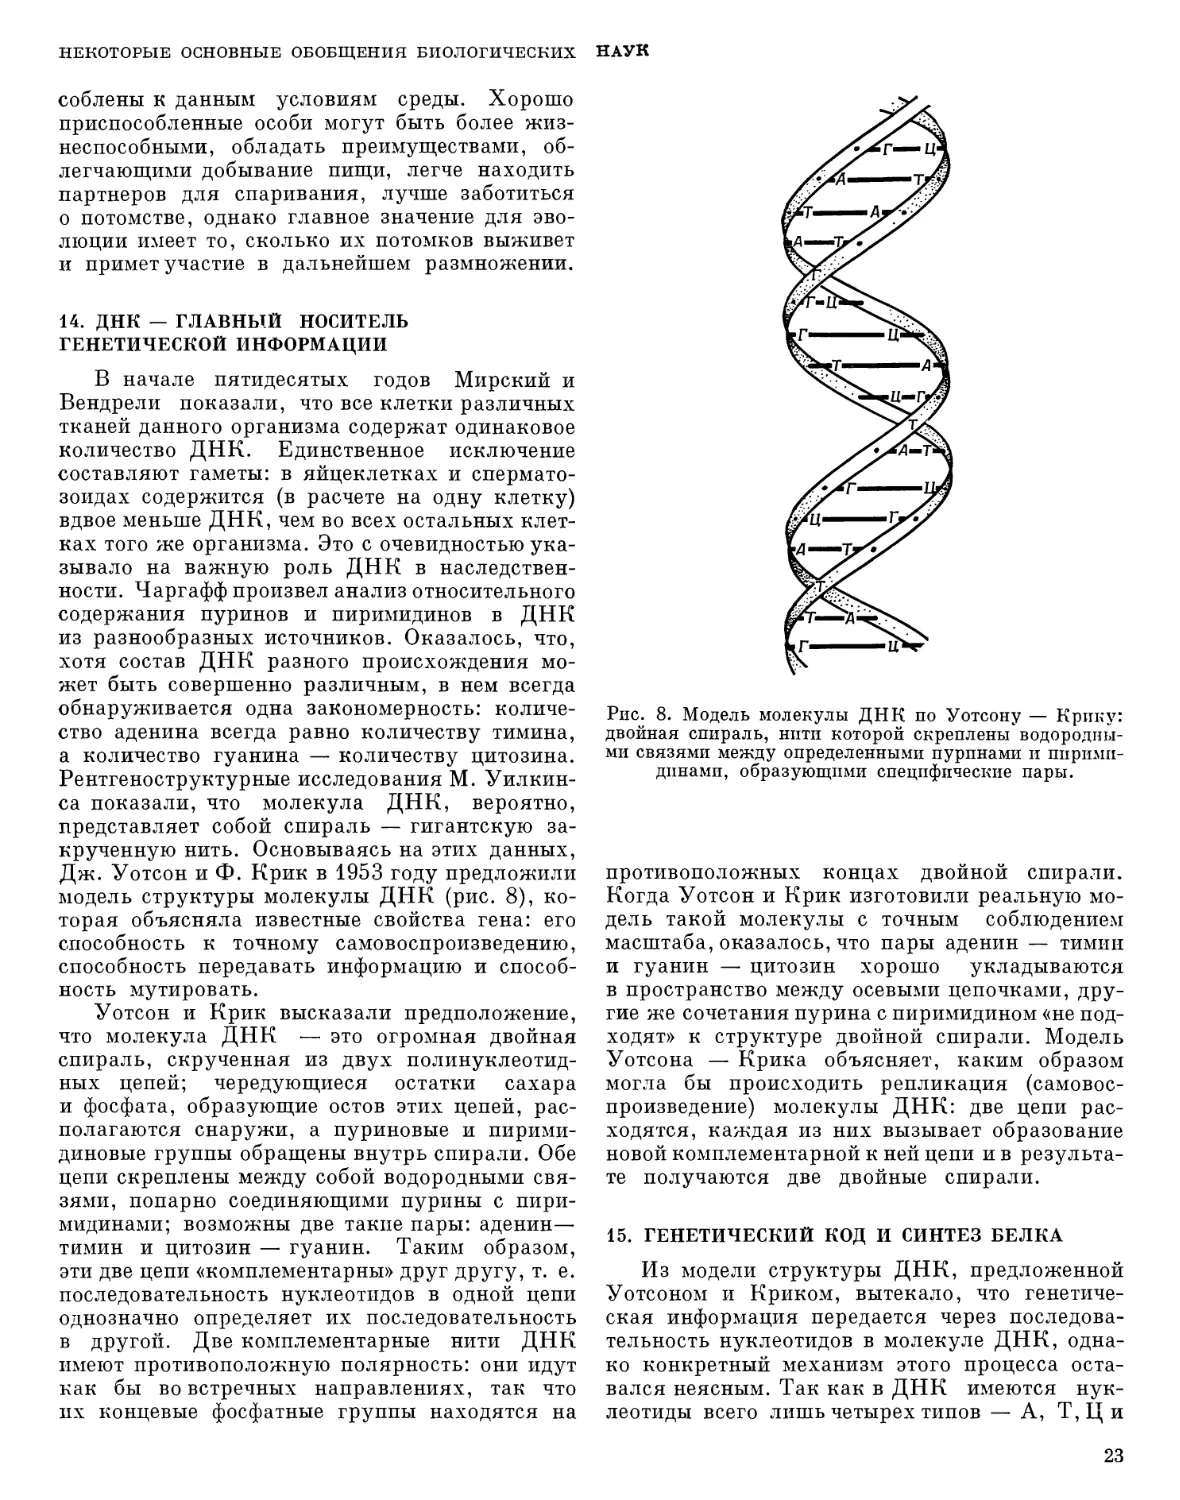 14. ДНК — главный носитель генетической информации
15. Генетический код и синтез белка